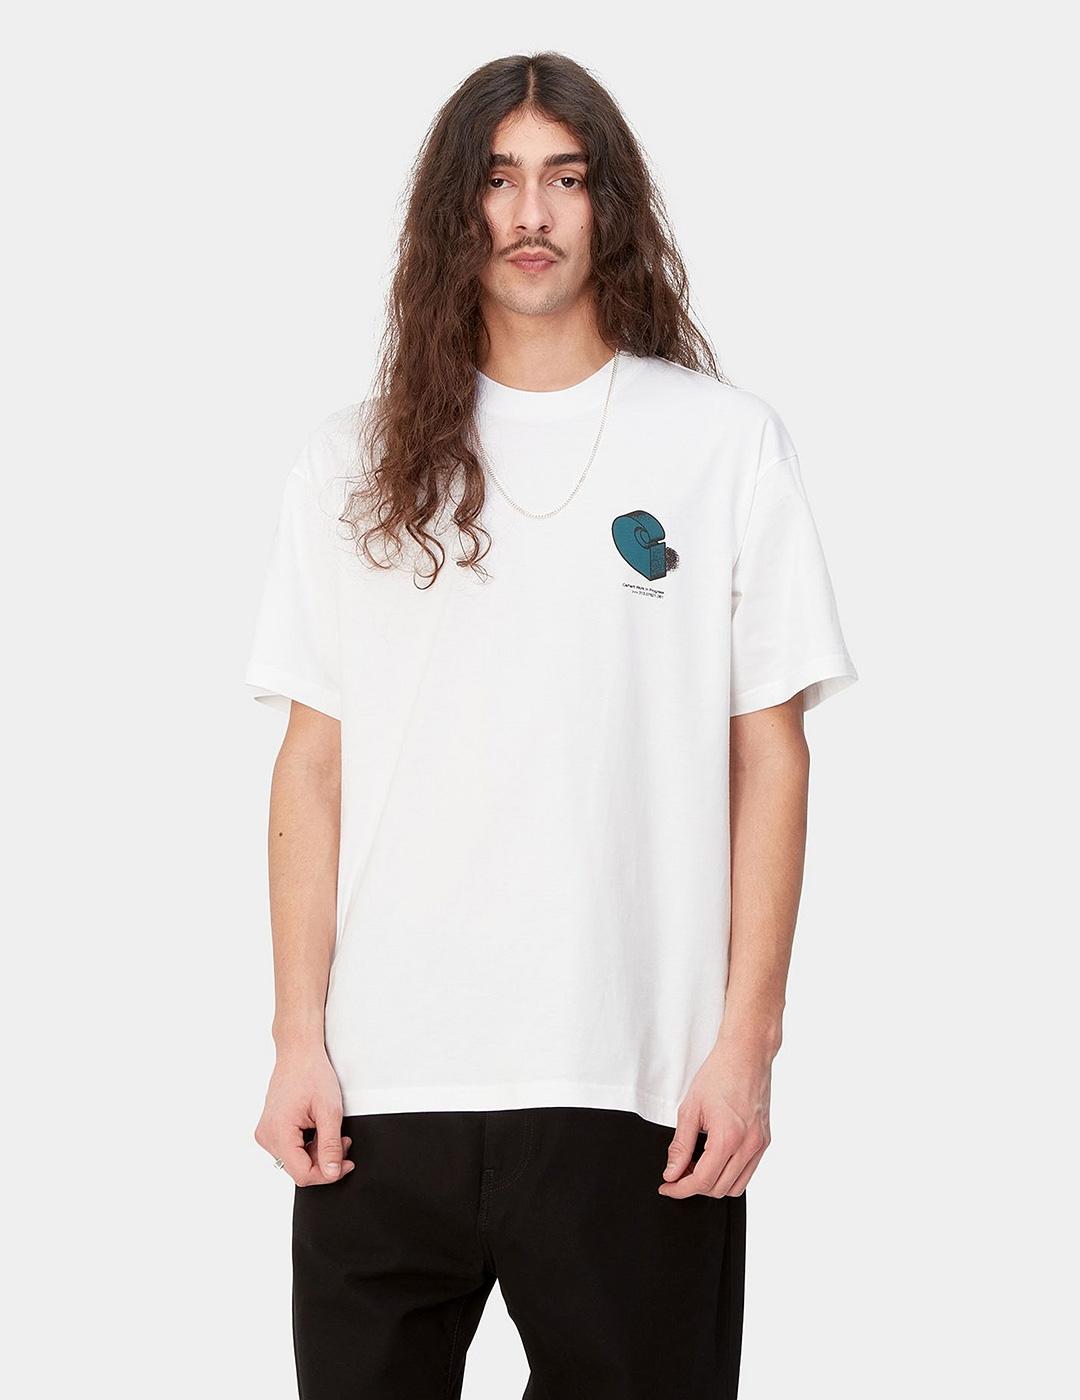 Camiseta CARHARTT DIAGRAM C - White